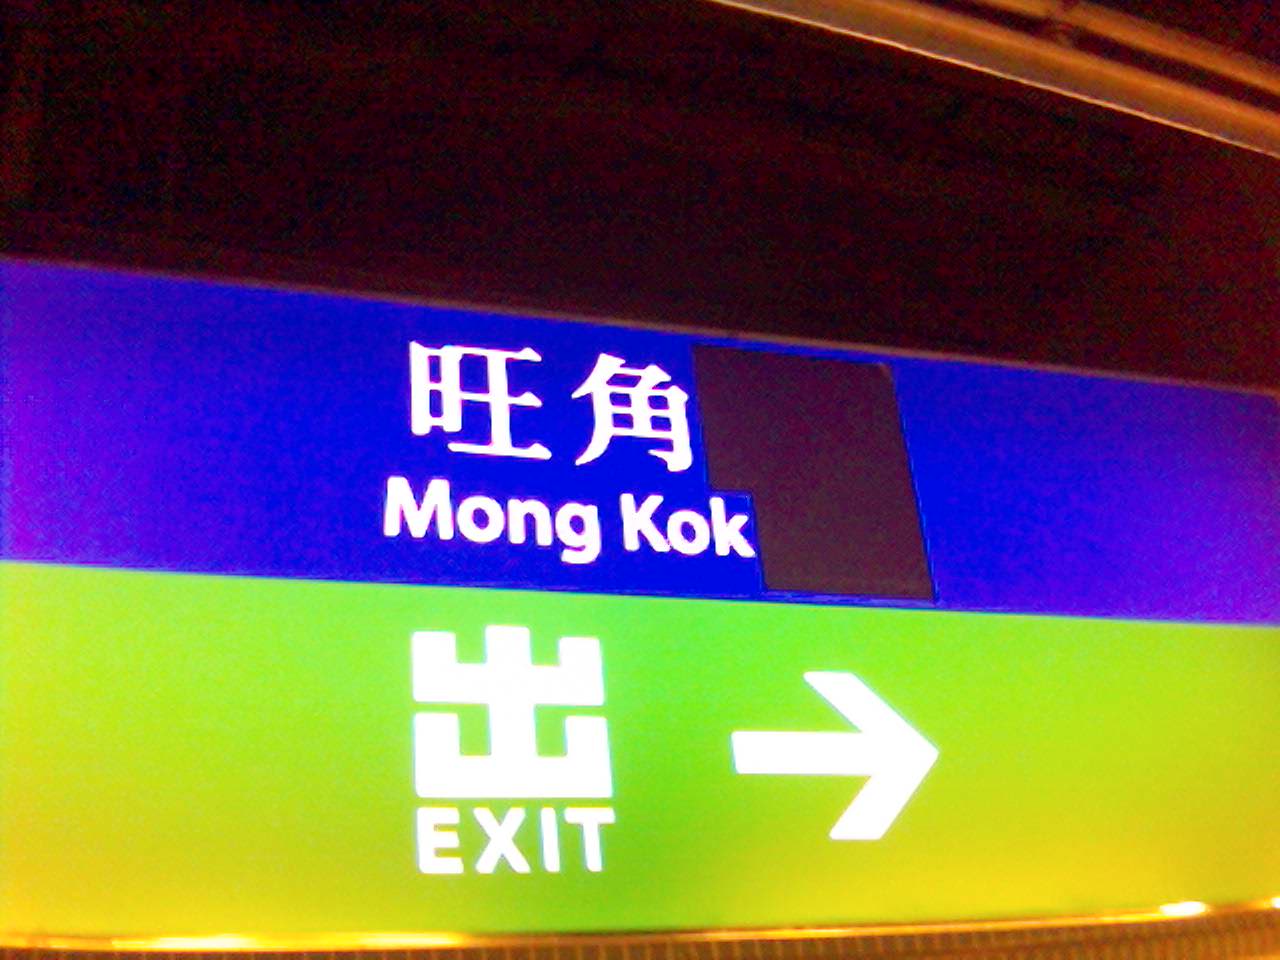 尚未改名成旺角東站的旺角火車站